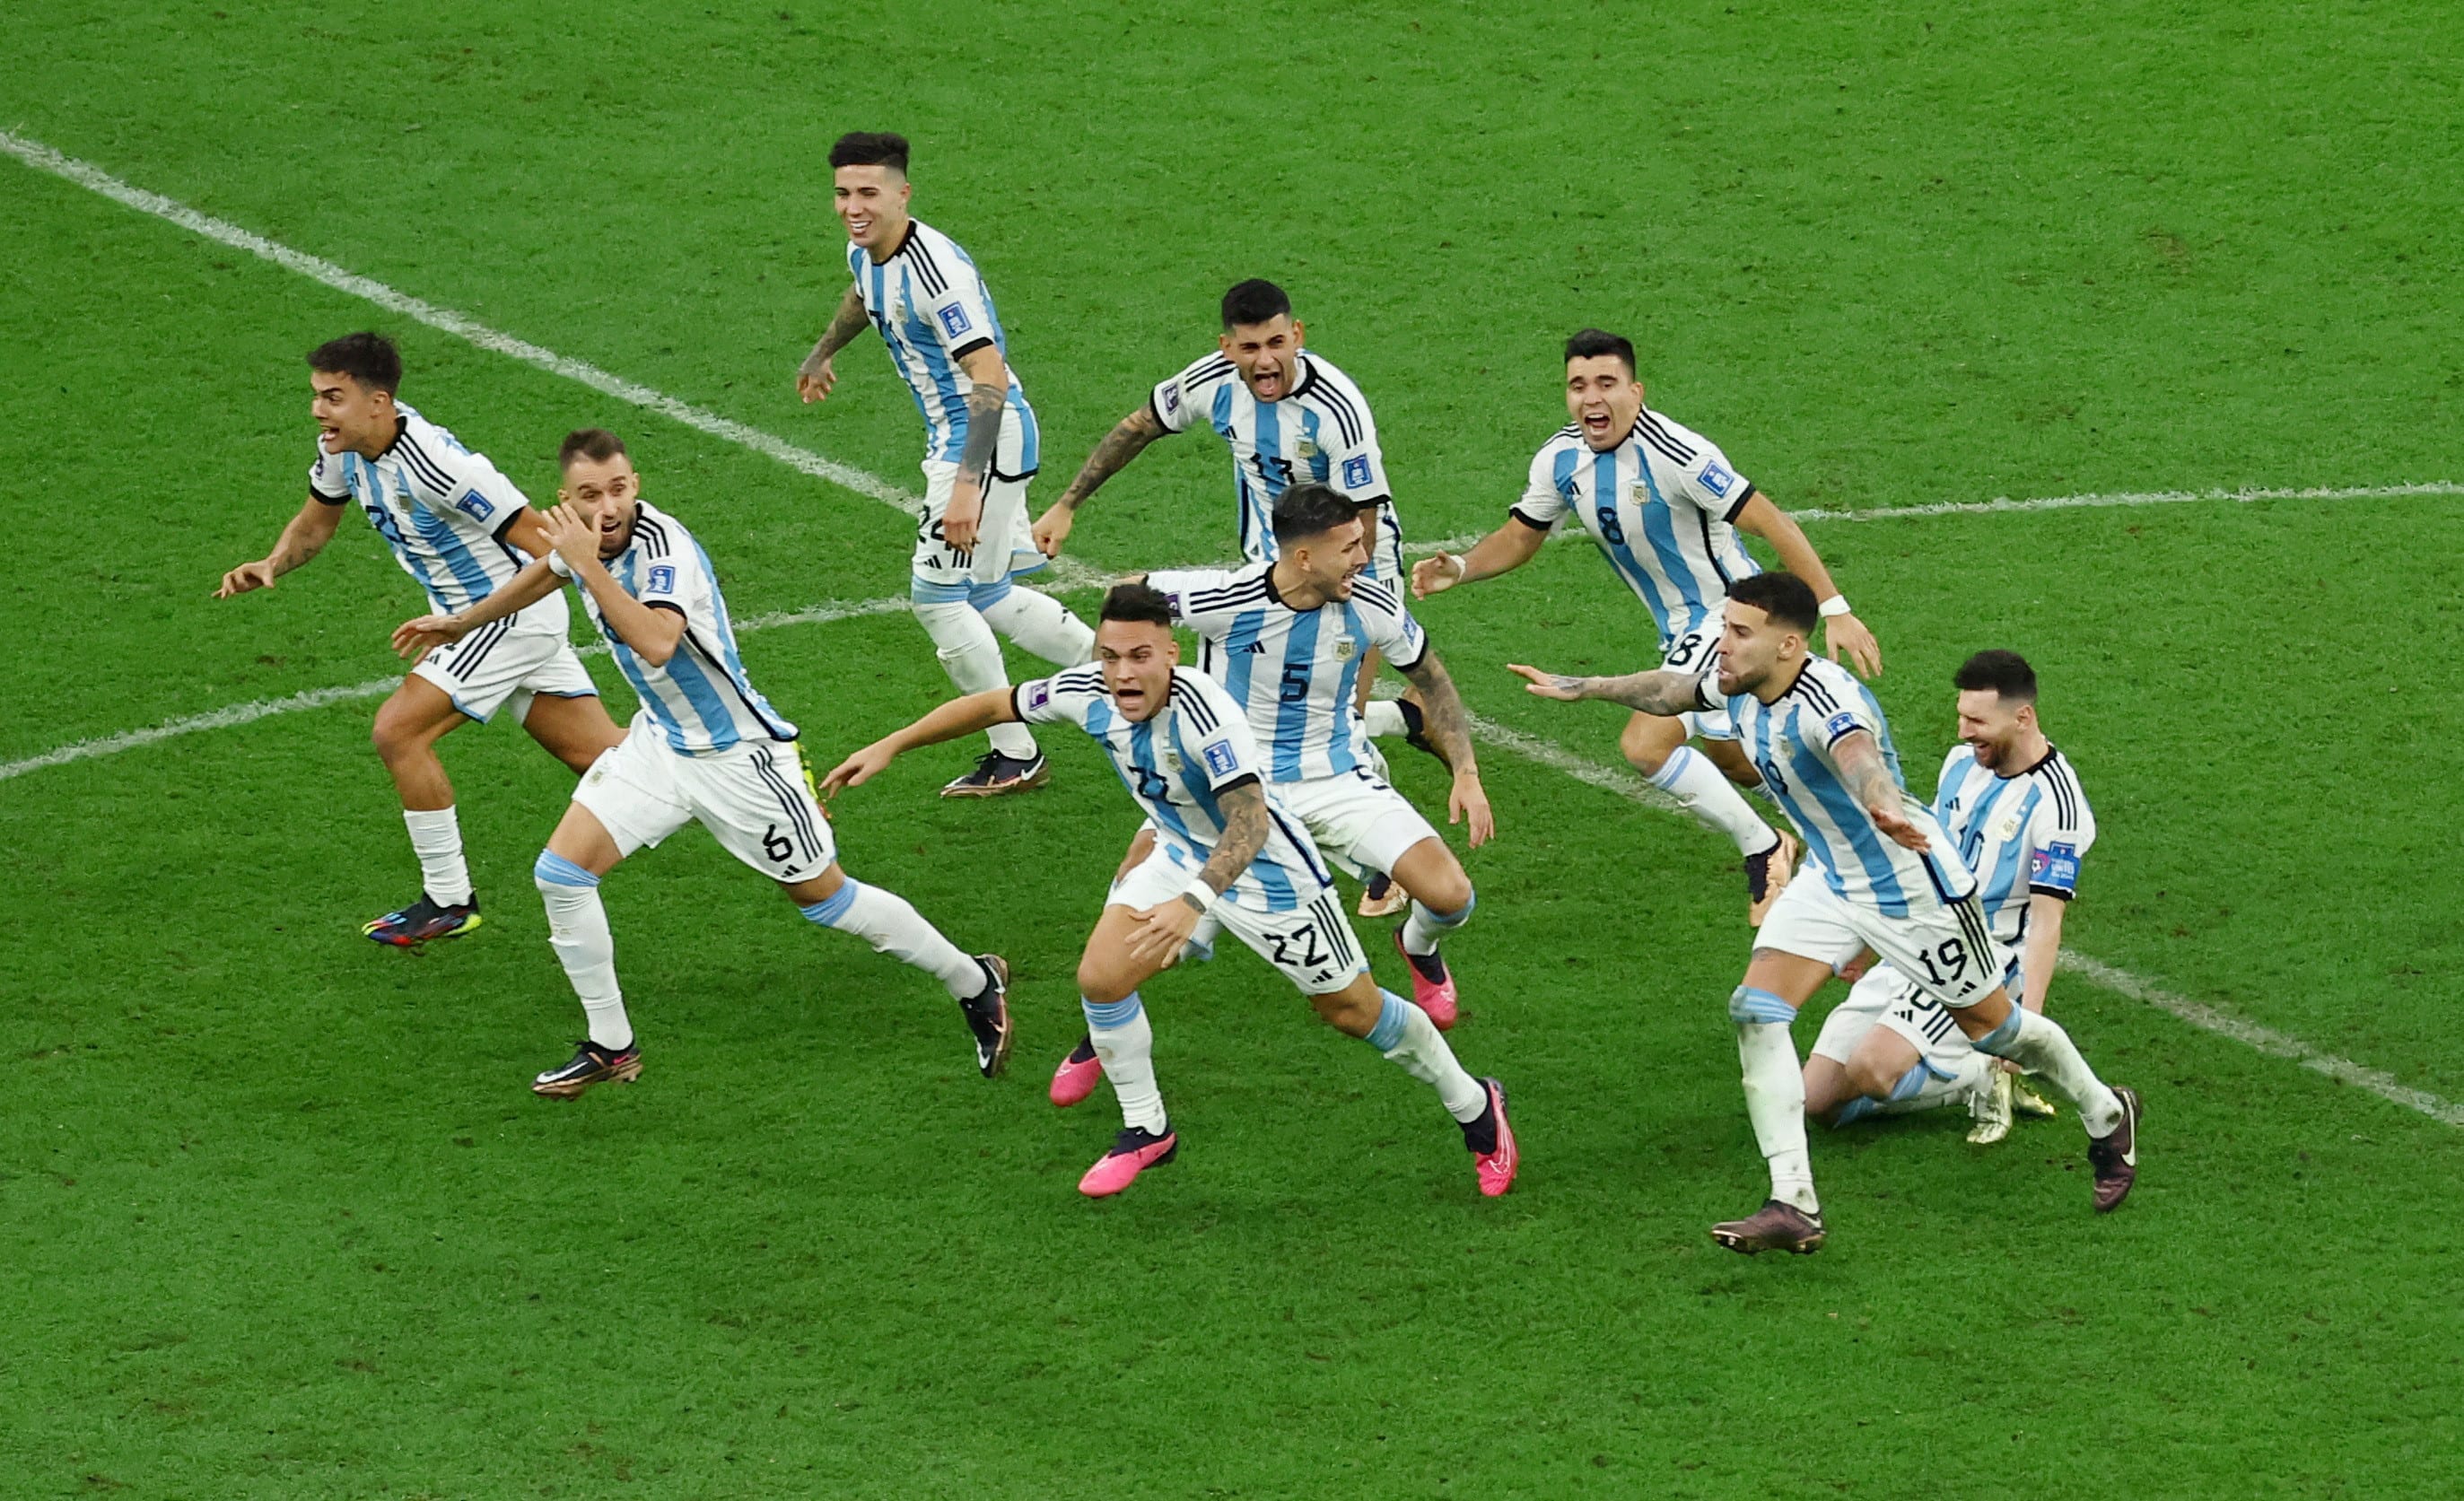 שחקני נבחרת ארגנטינה ברגע הניצחון בגמר מונדיאל 2022